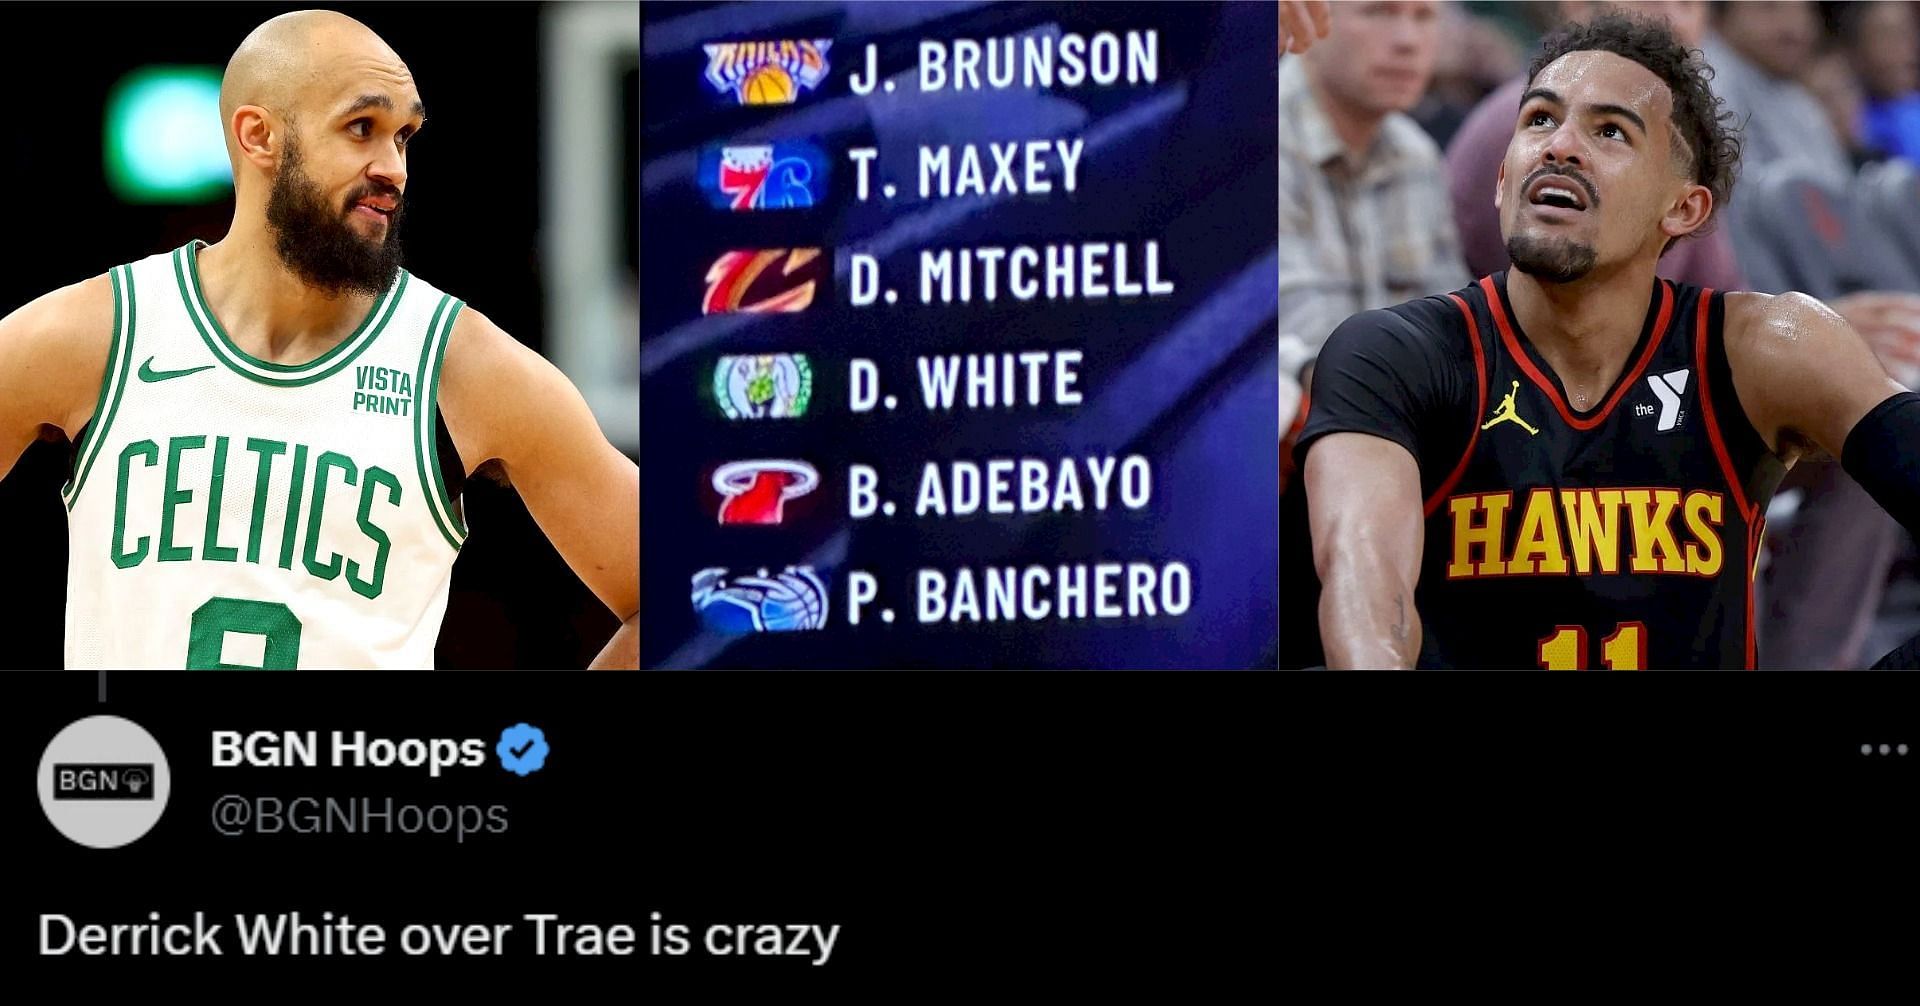 NBA Twitter outrage erupts as Reggie Miller